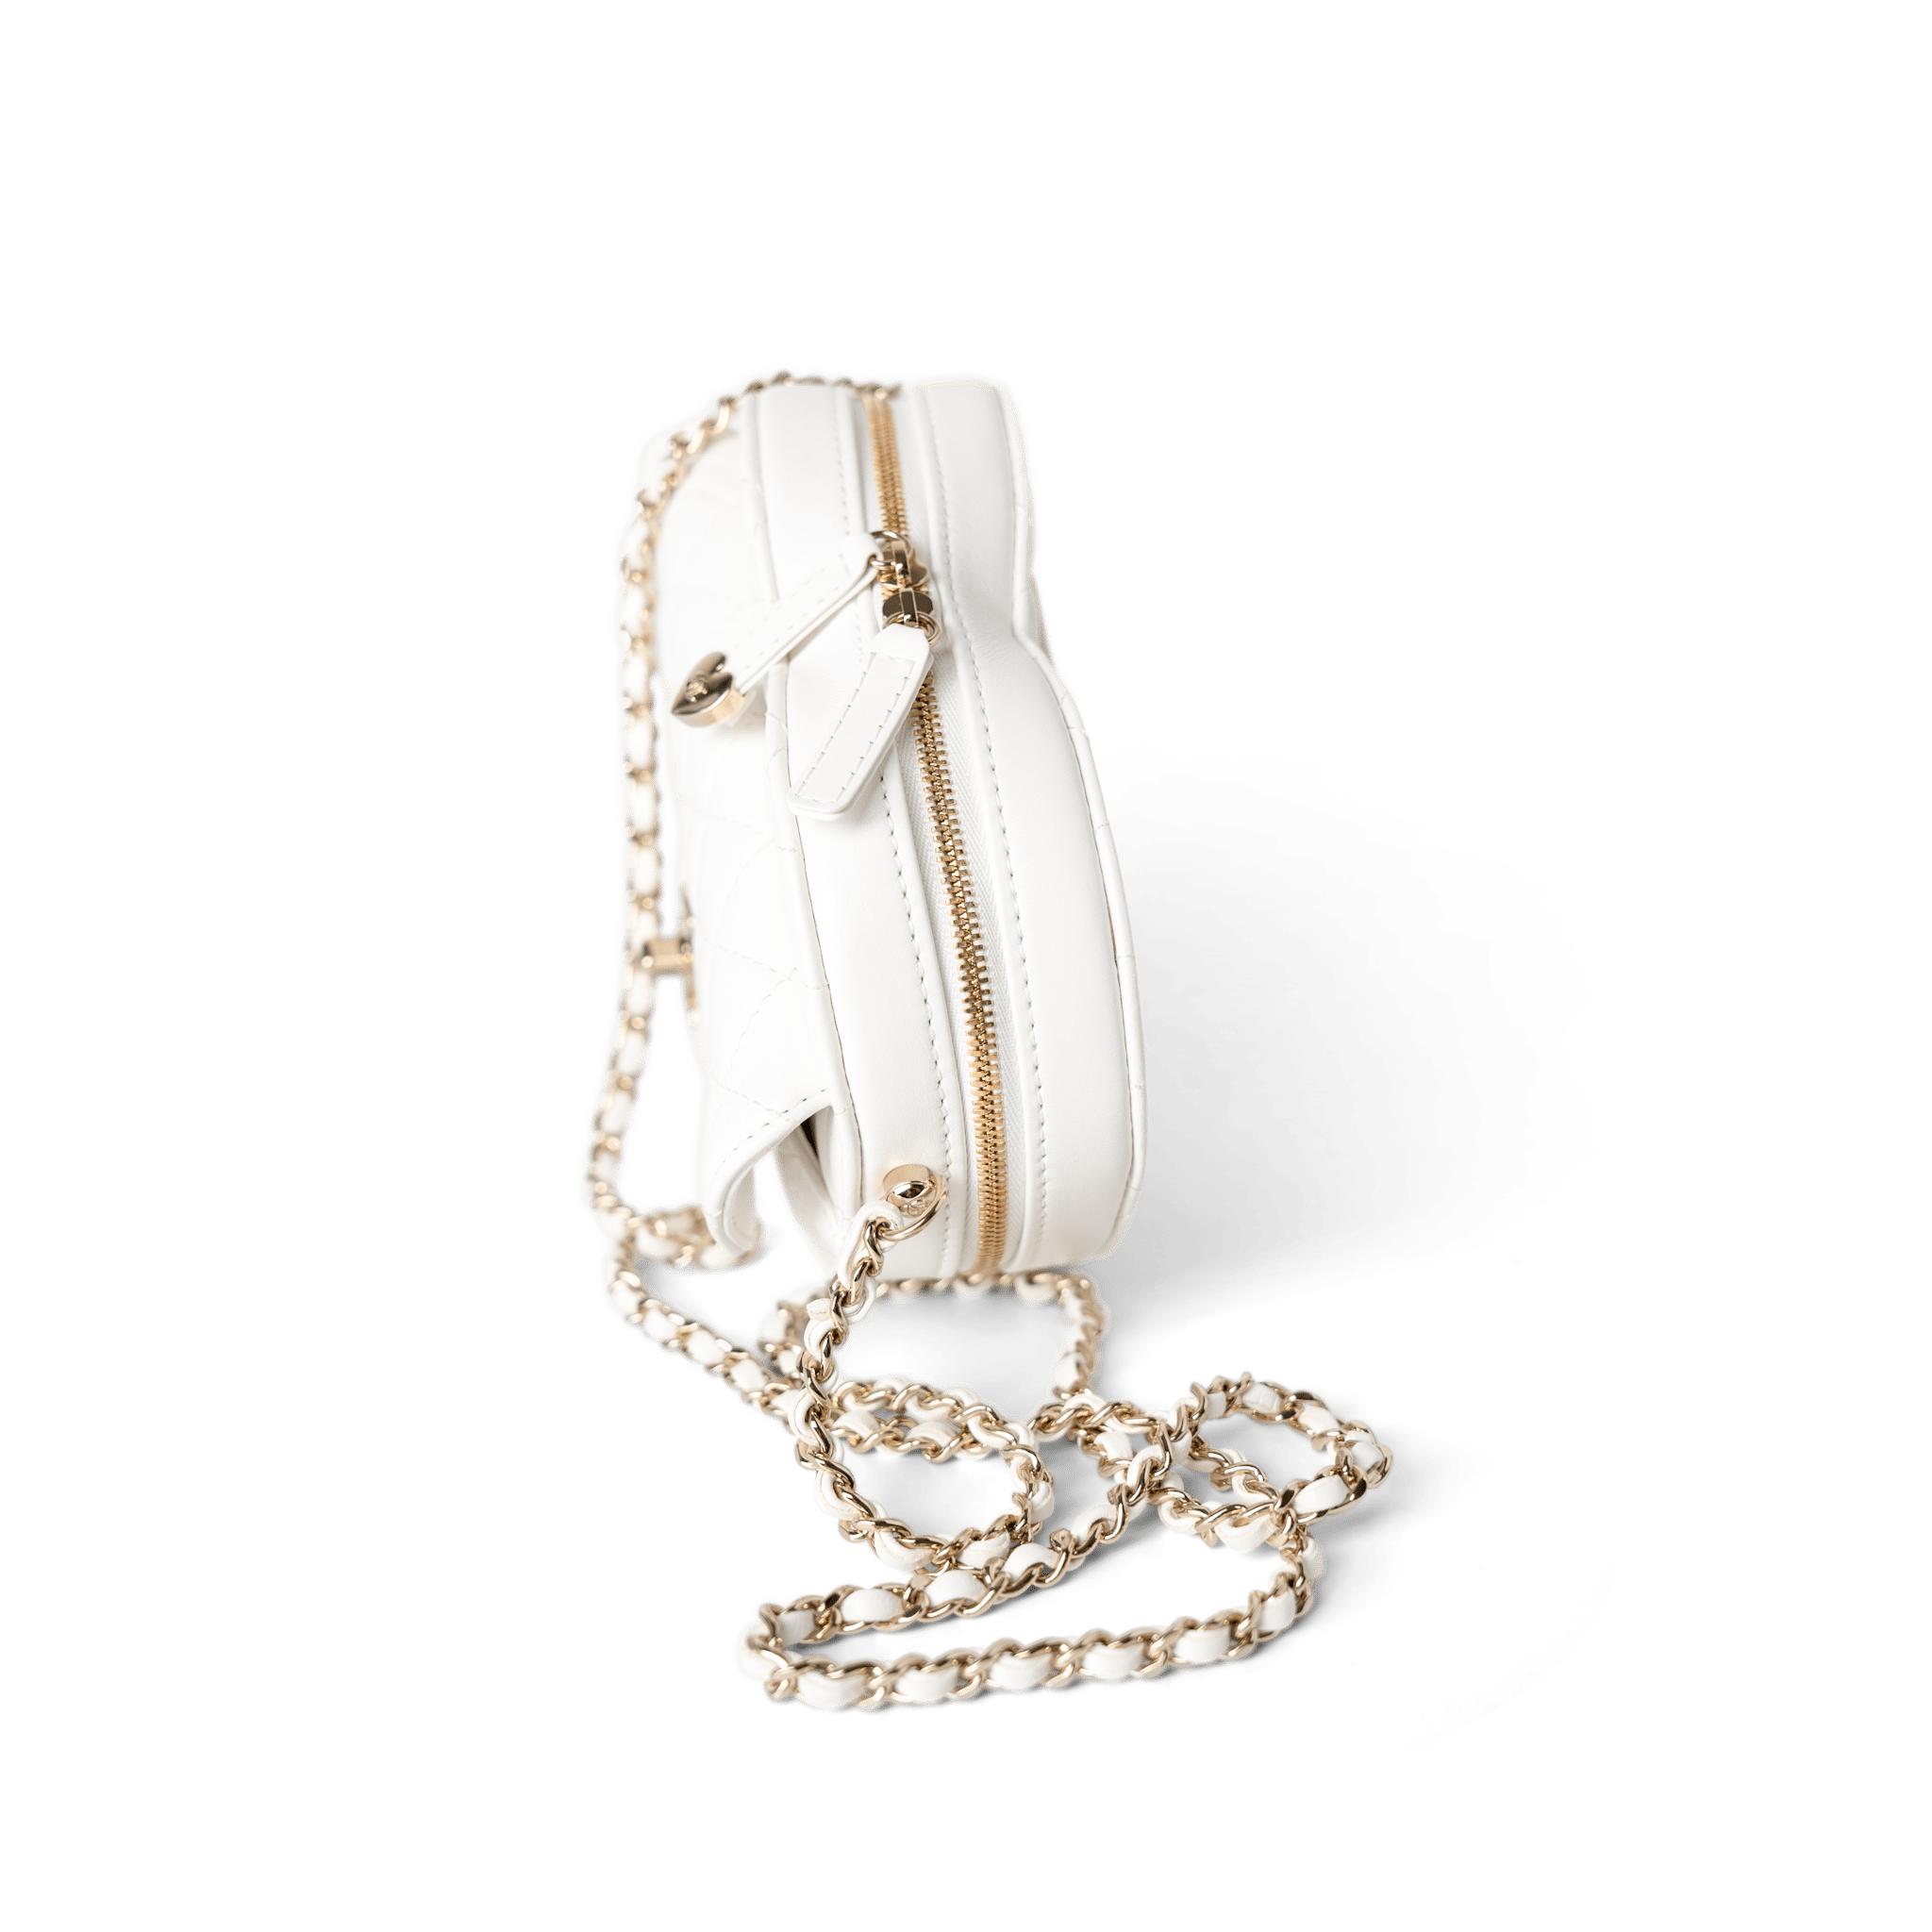 CHANEL Handbag Seasonal Bag / White 22S White Lambskin Quilted Large Heart Bag Light Gold Hardware - Redeluxe